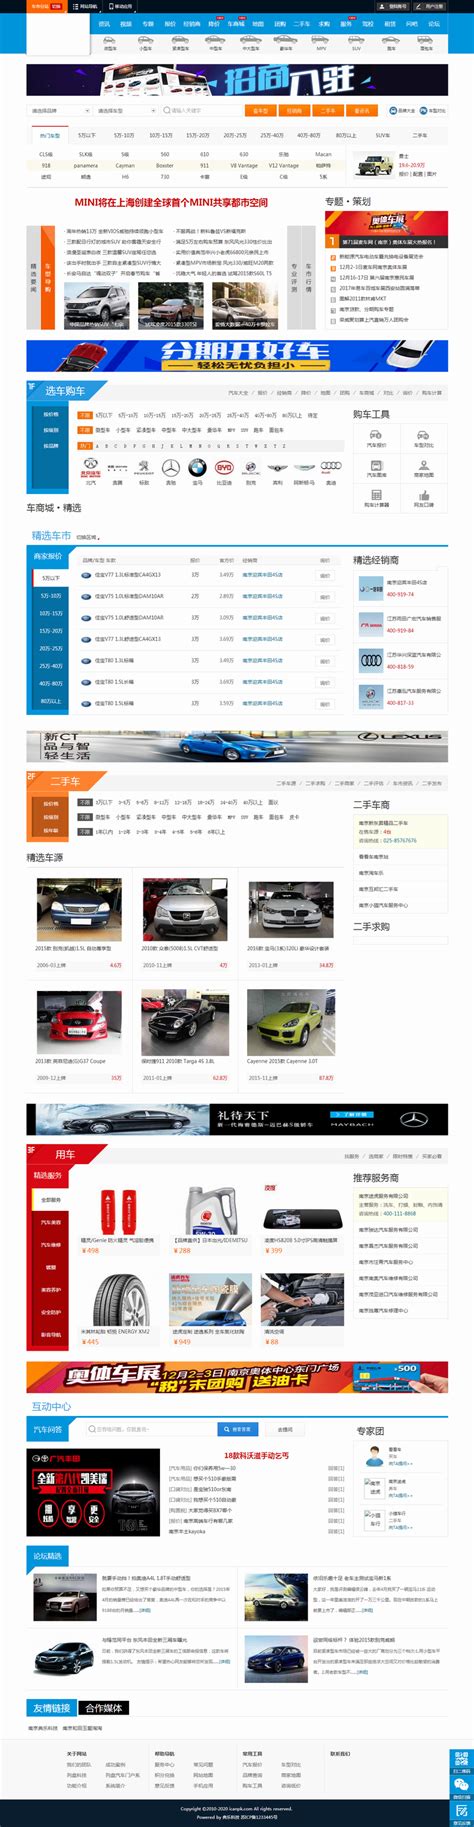 列盘汽车网综合门户 - 案例展示 - 南京网站制作